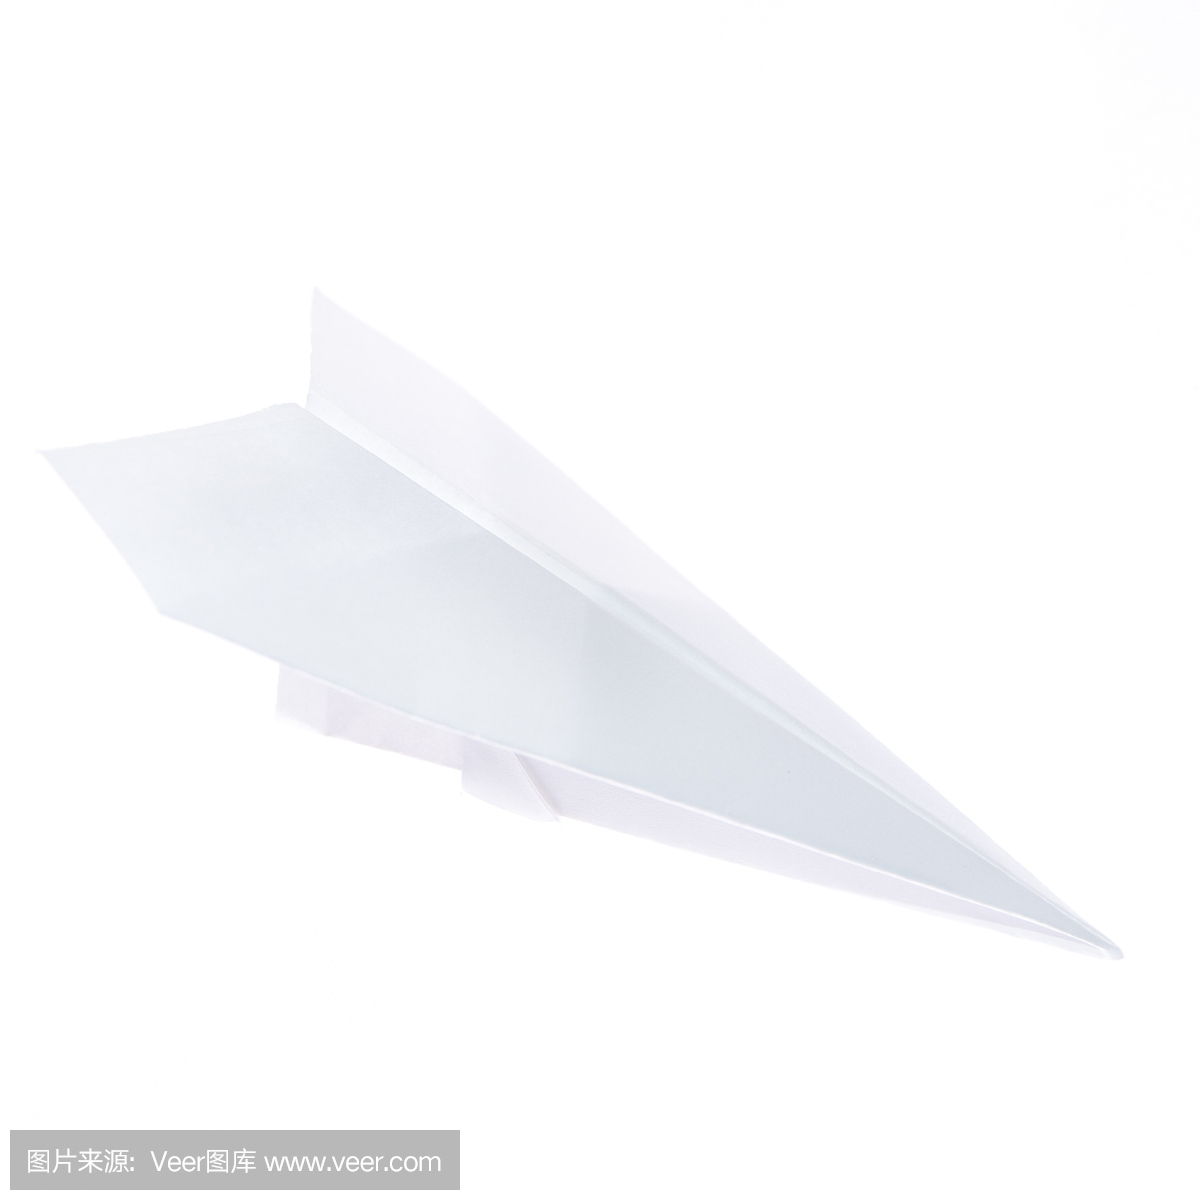 纸飞机自动飞行器做法